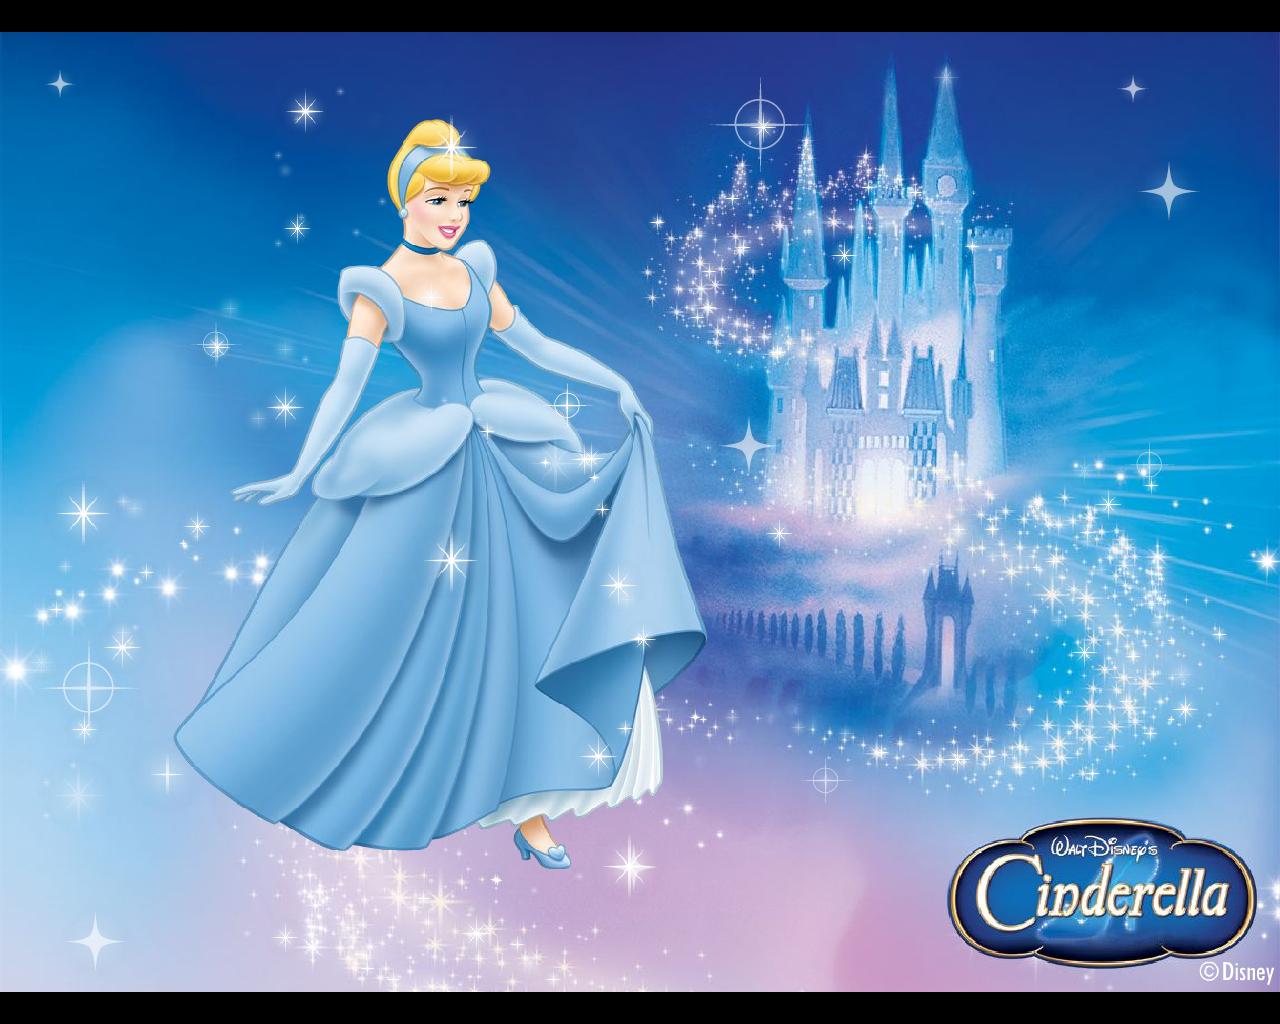 Disney Princess Cinderella HD Image 07828